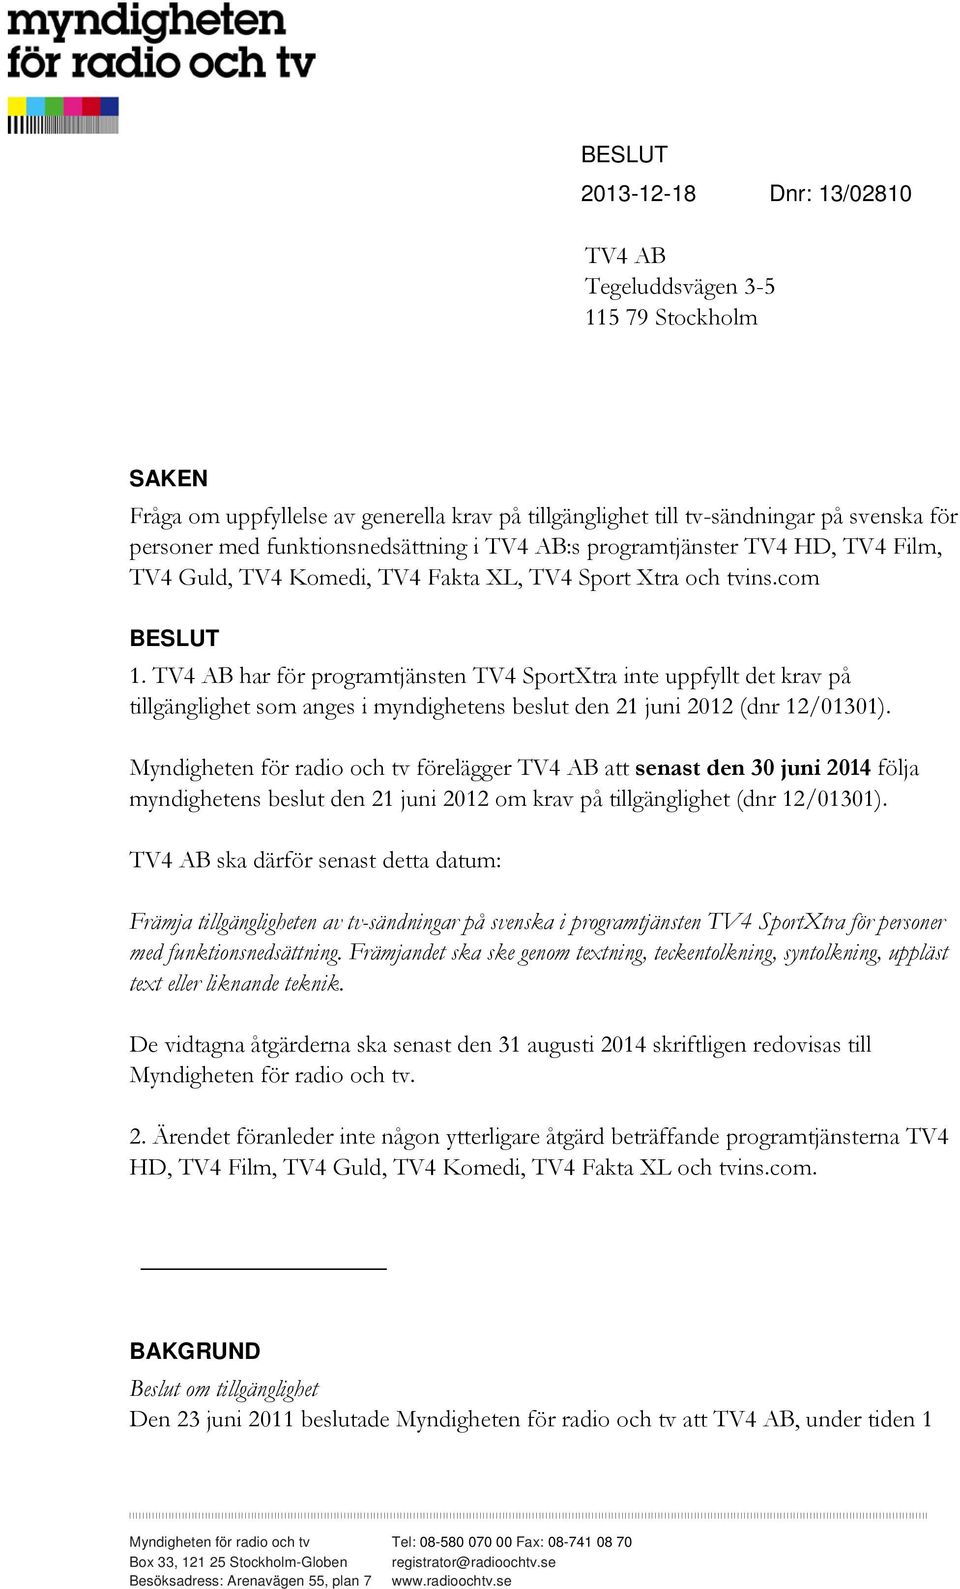 TV4 AB har för programtjänsten TV4 SportXtra inte uppfyllt det krav på tillgänglighet som anges i myndighetens beslut den 21 juni 2012 (dnr 12/01301).